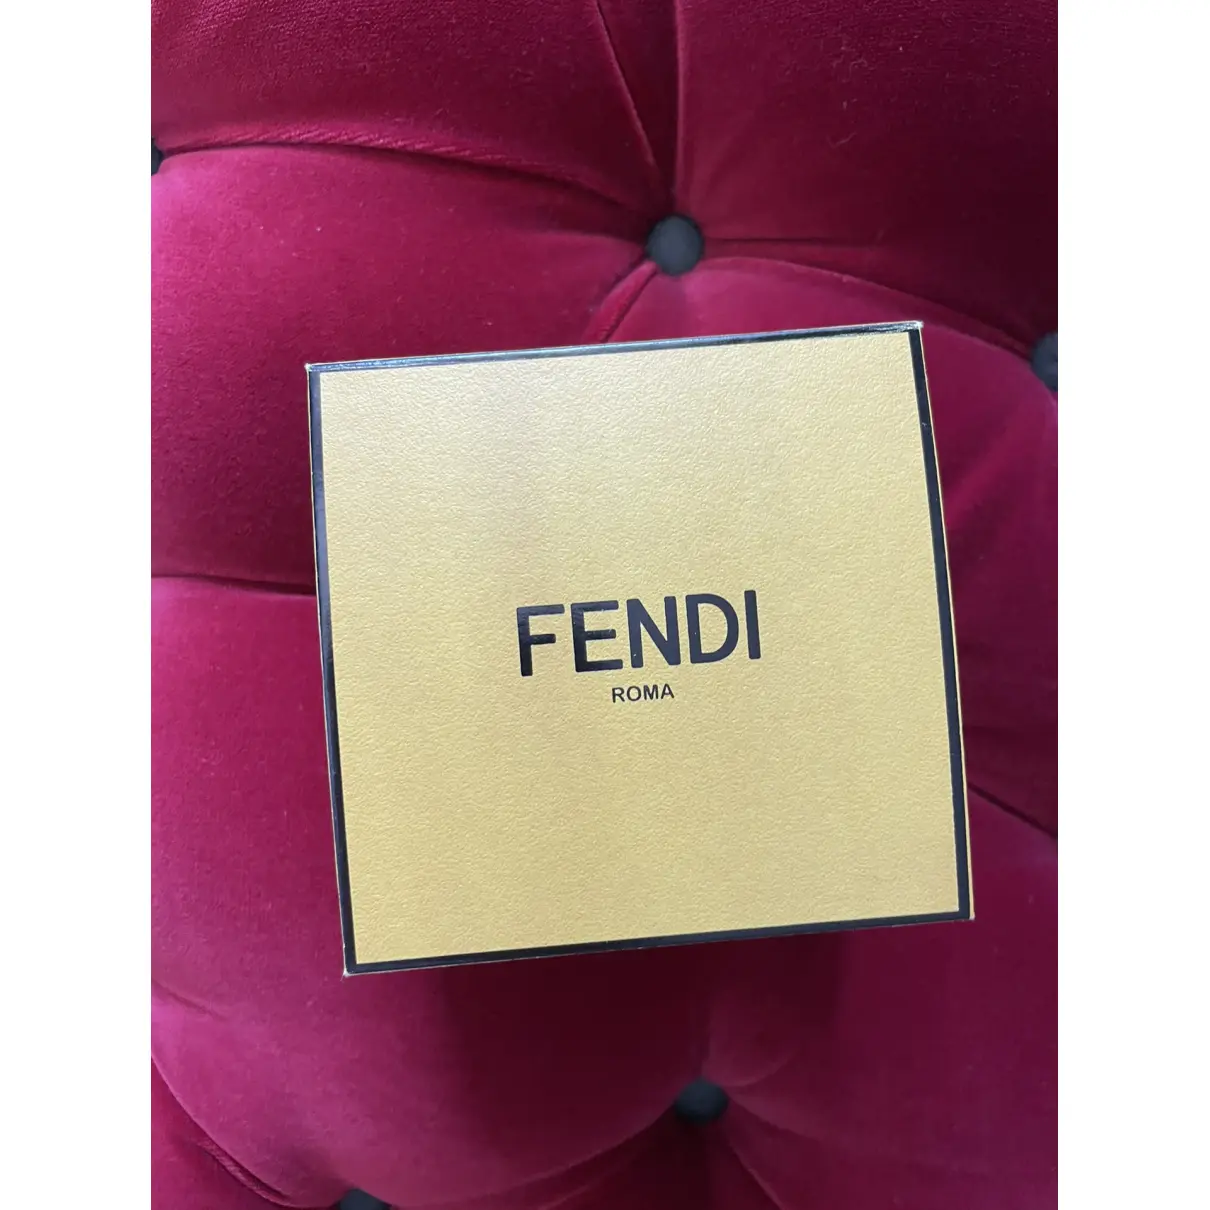 Buy Fendi Crystal earrings online